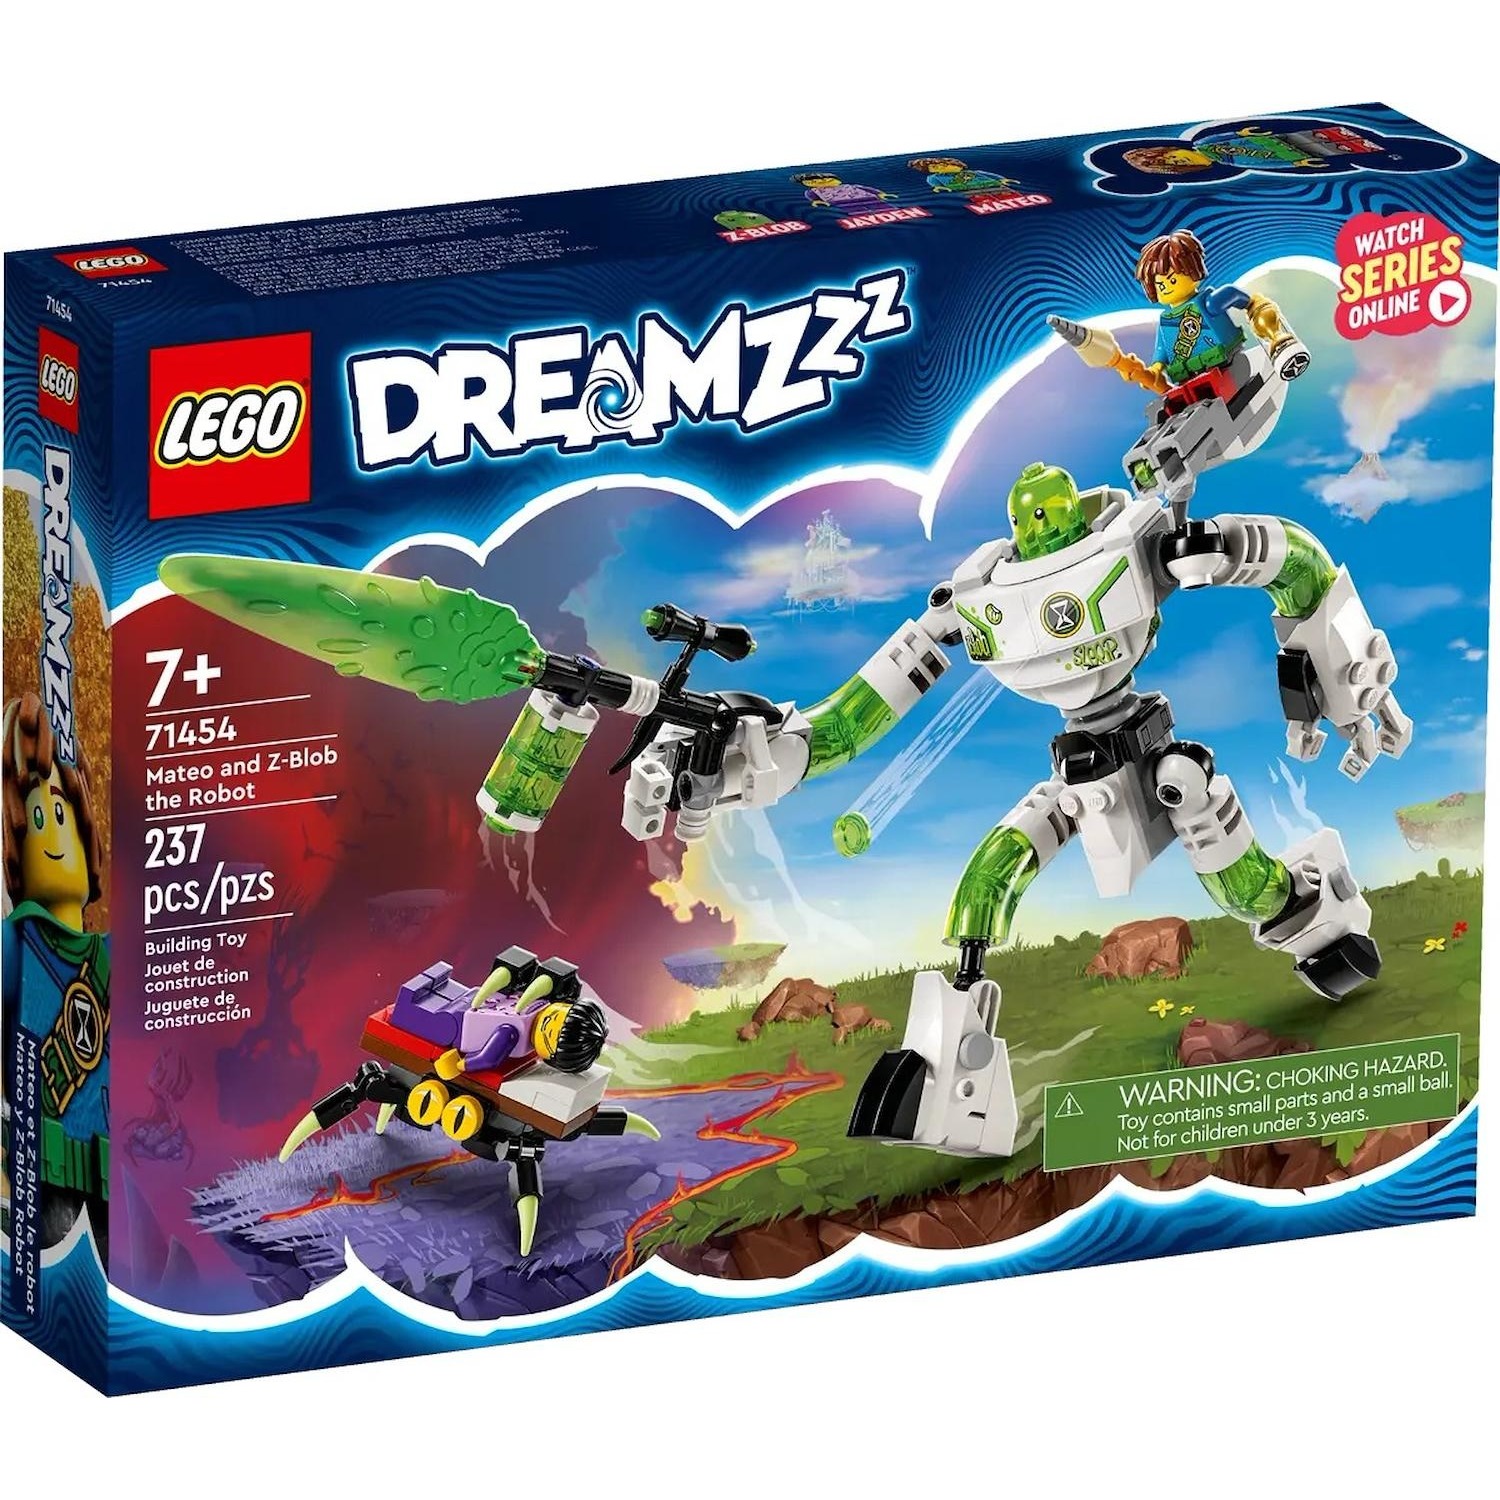 Immagine per Lego Dreamzzz Mateo e il robot Z-Blob da DIMOStore